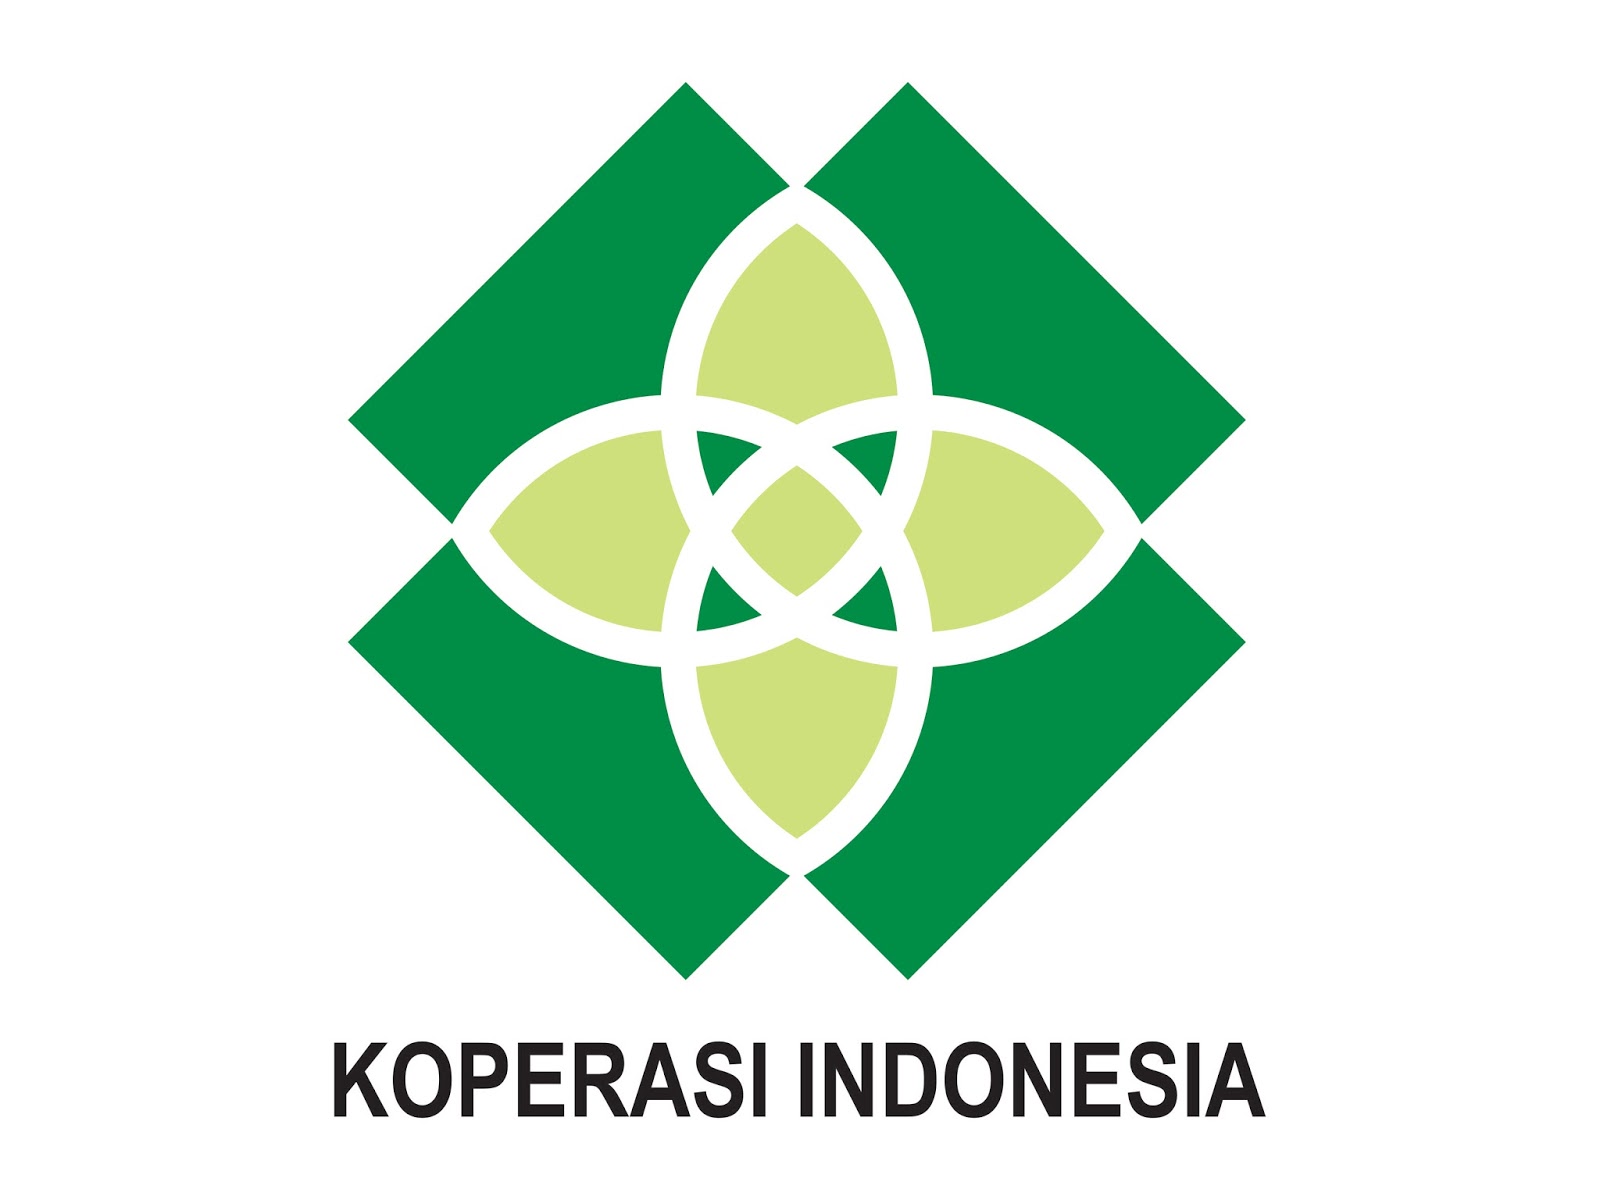 Logo Koperasi Indonesia Terbaru Format Cdr Png Gudril Gambar Batik